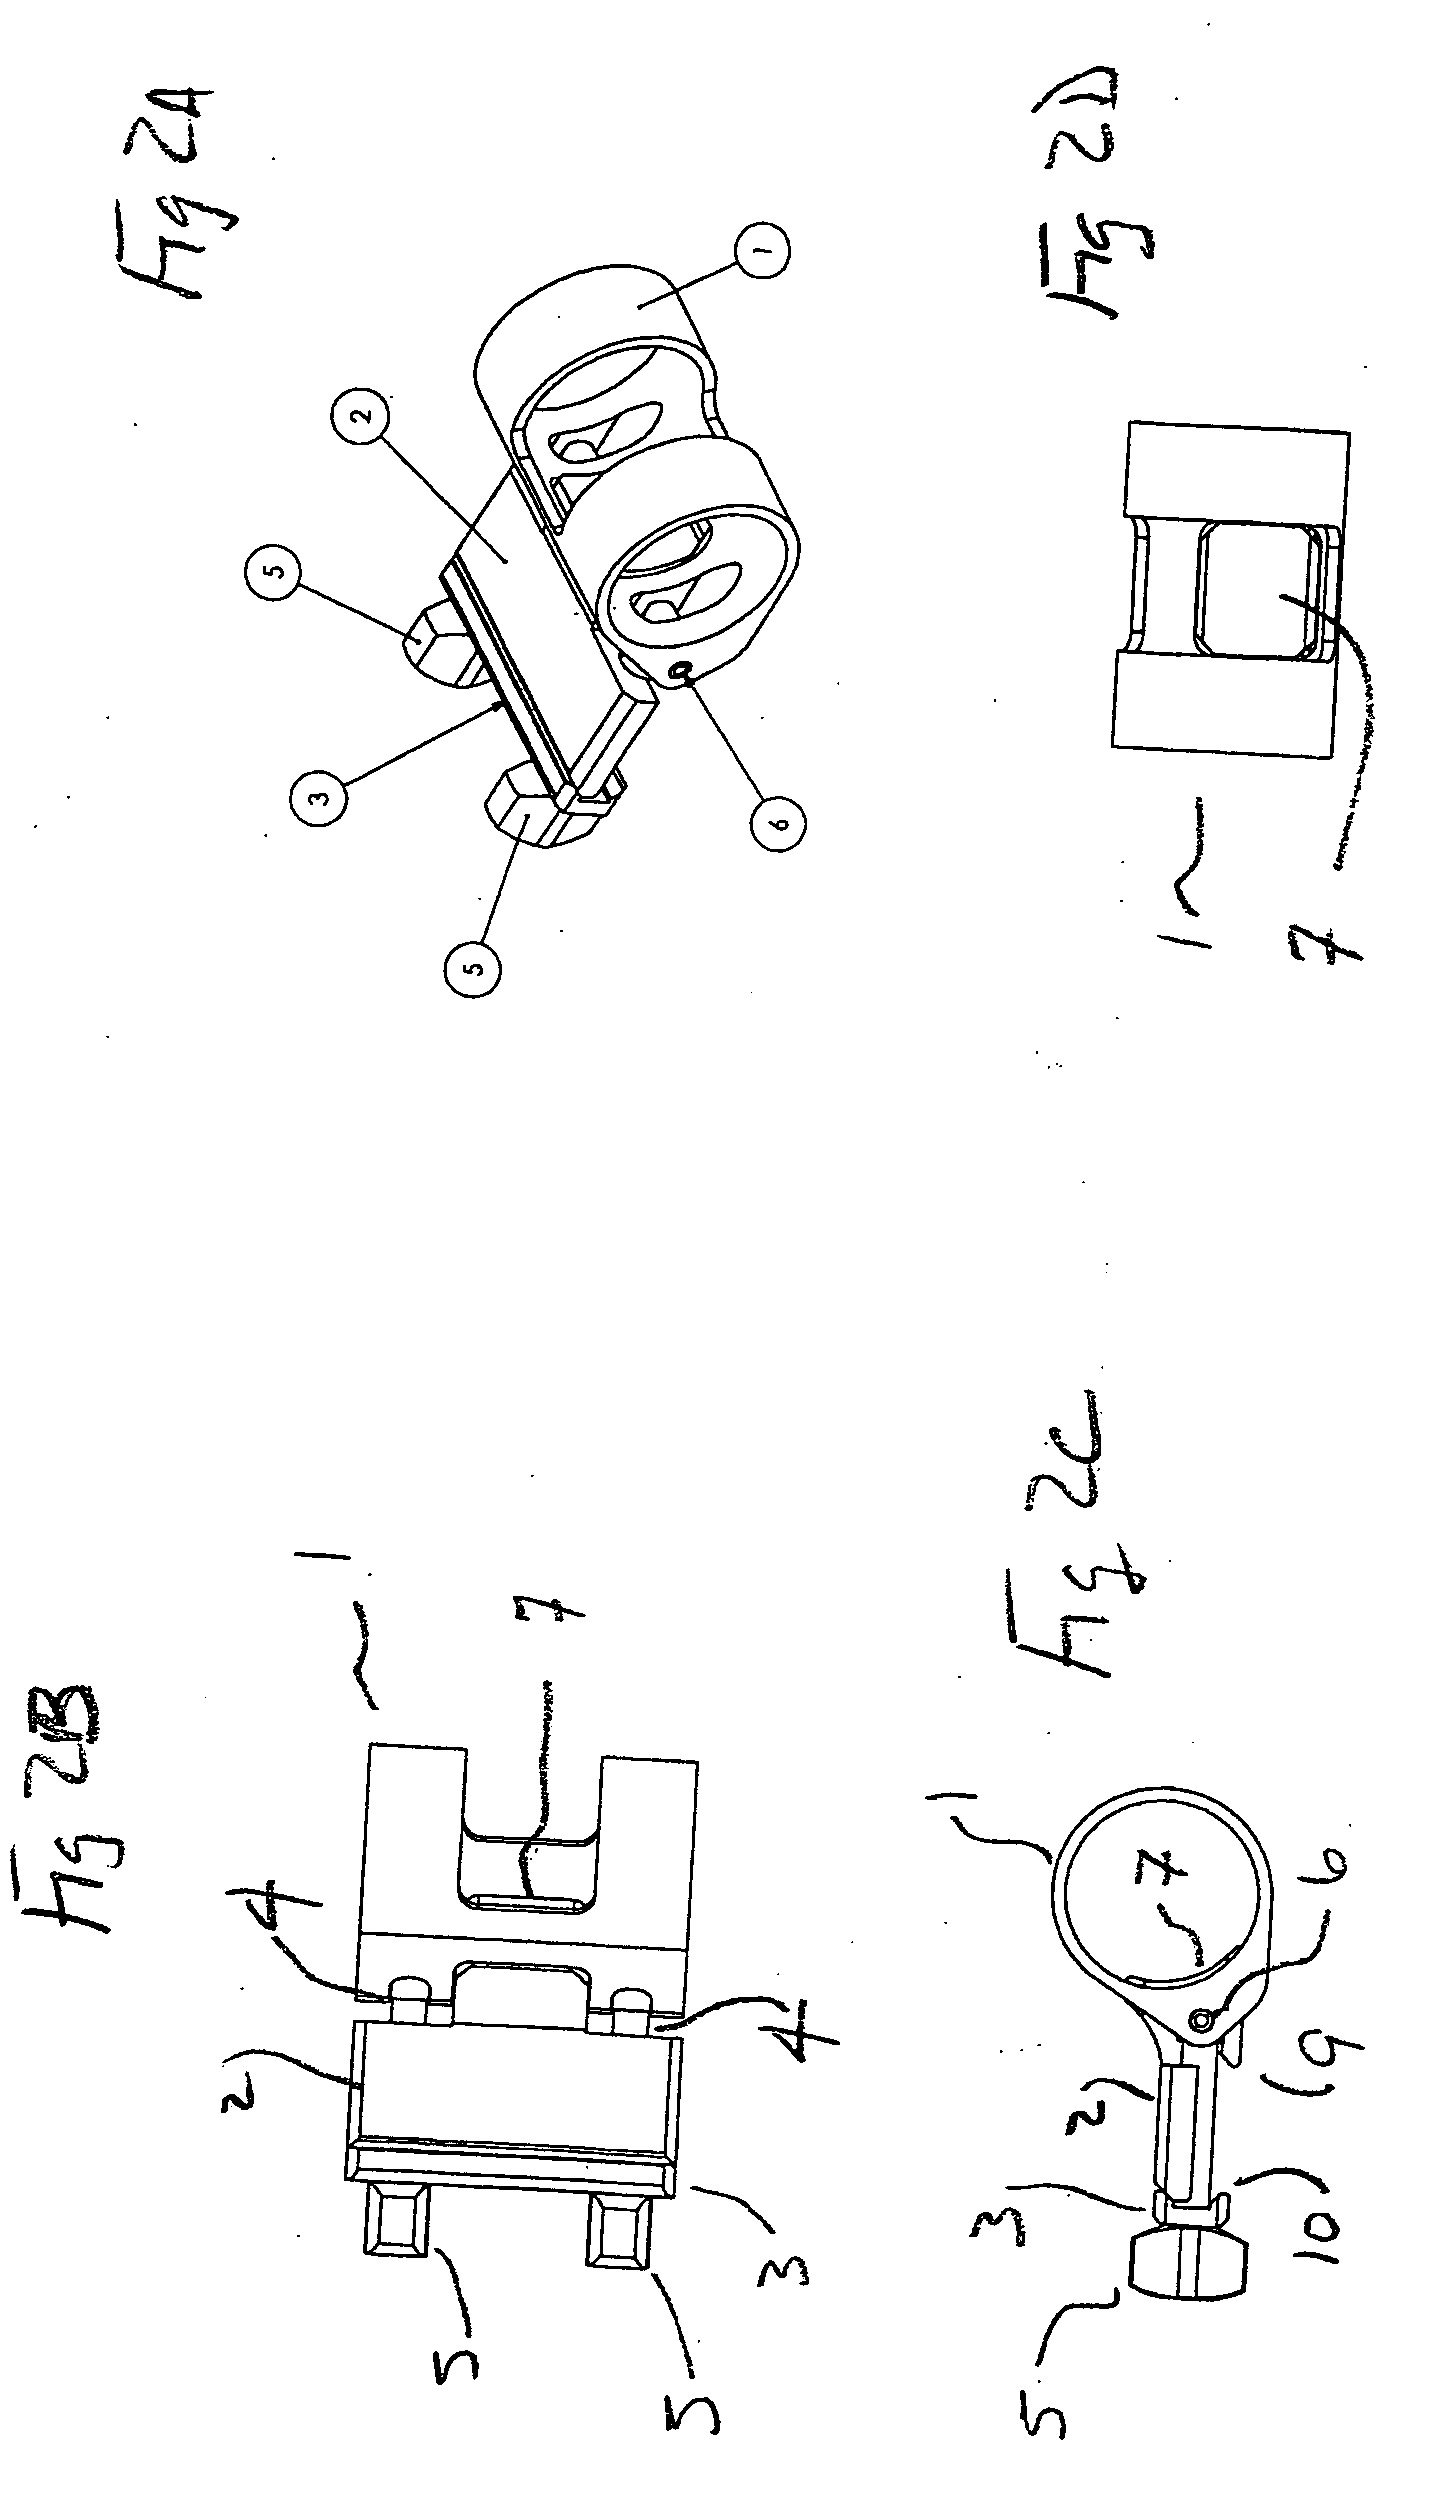 Firearm mounting mechanism